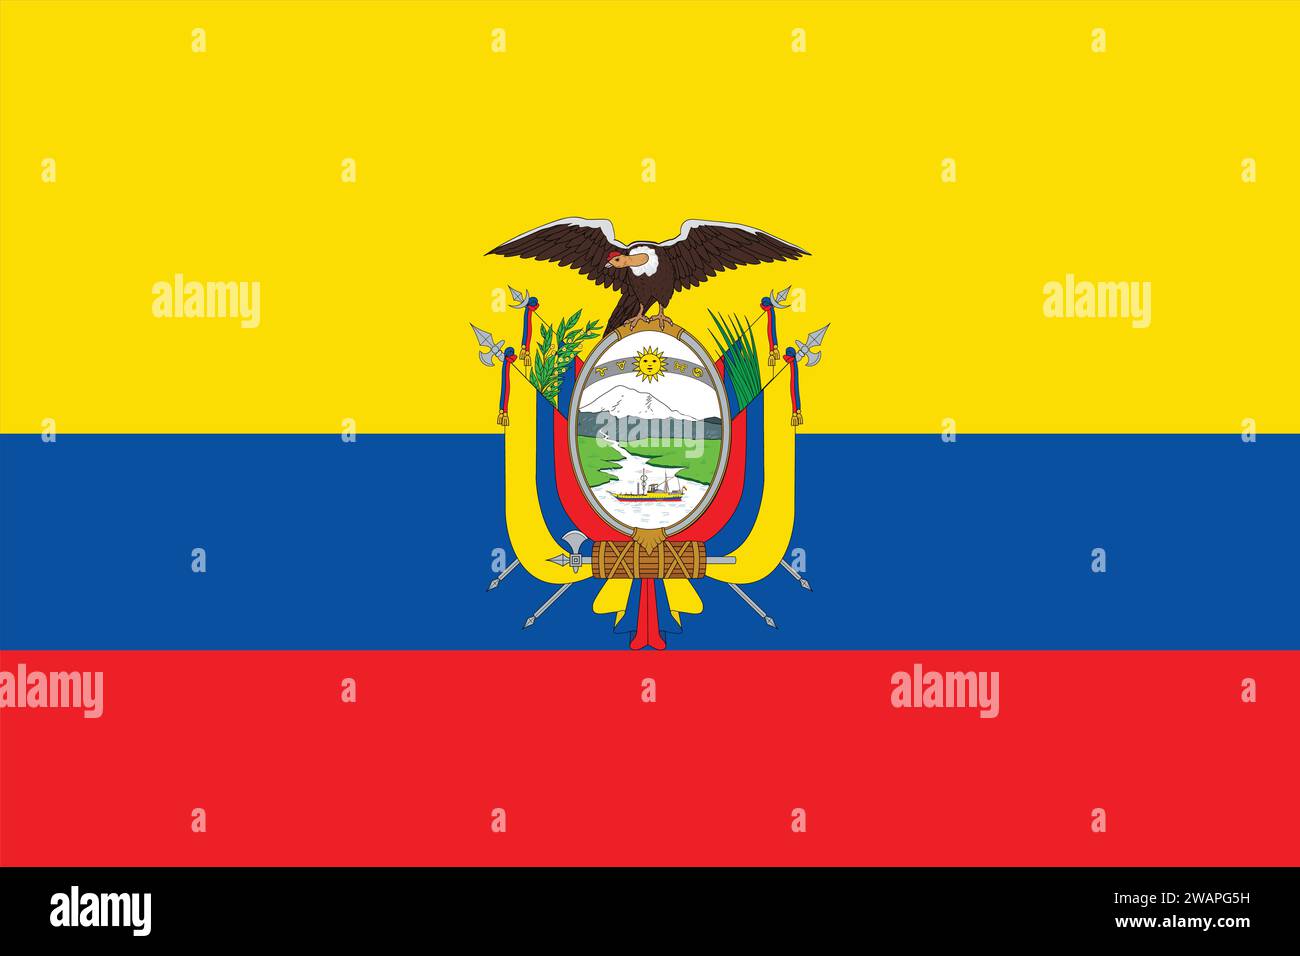 Hohe detaillierte Flagge von Ecuador. Nationale Flagge Ecuadors. Südamerika. 3D-Abbildung. Stock Vektor